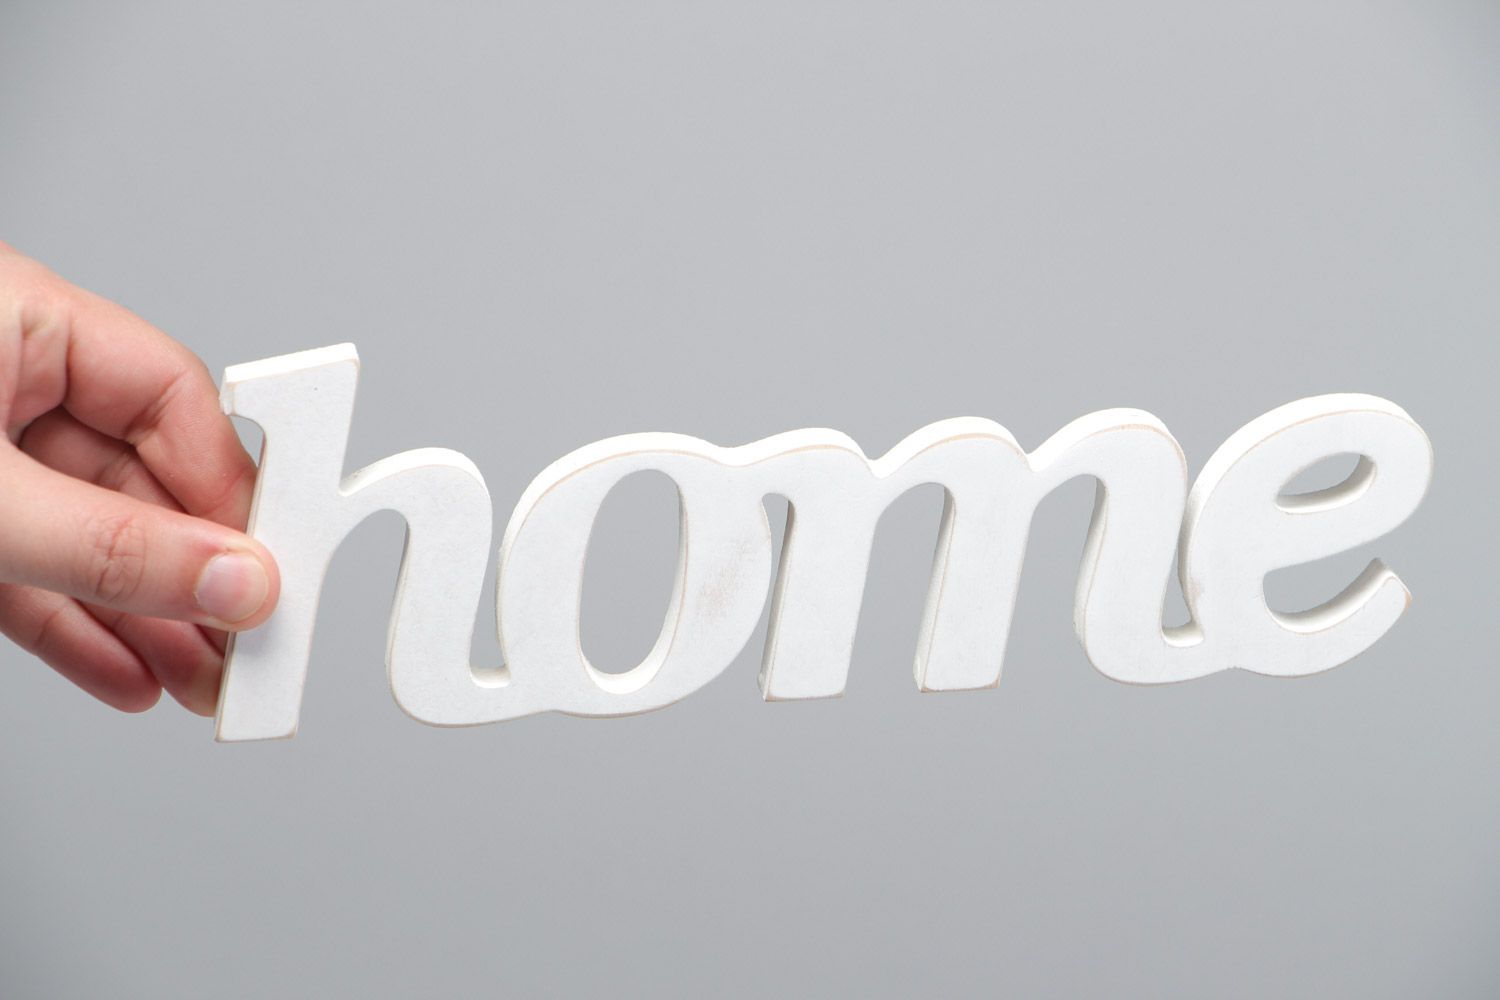 Чипборд надпись из фанеры Home белого цвета для декора интерьера ручная работа фото 5